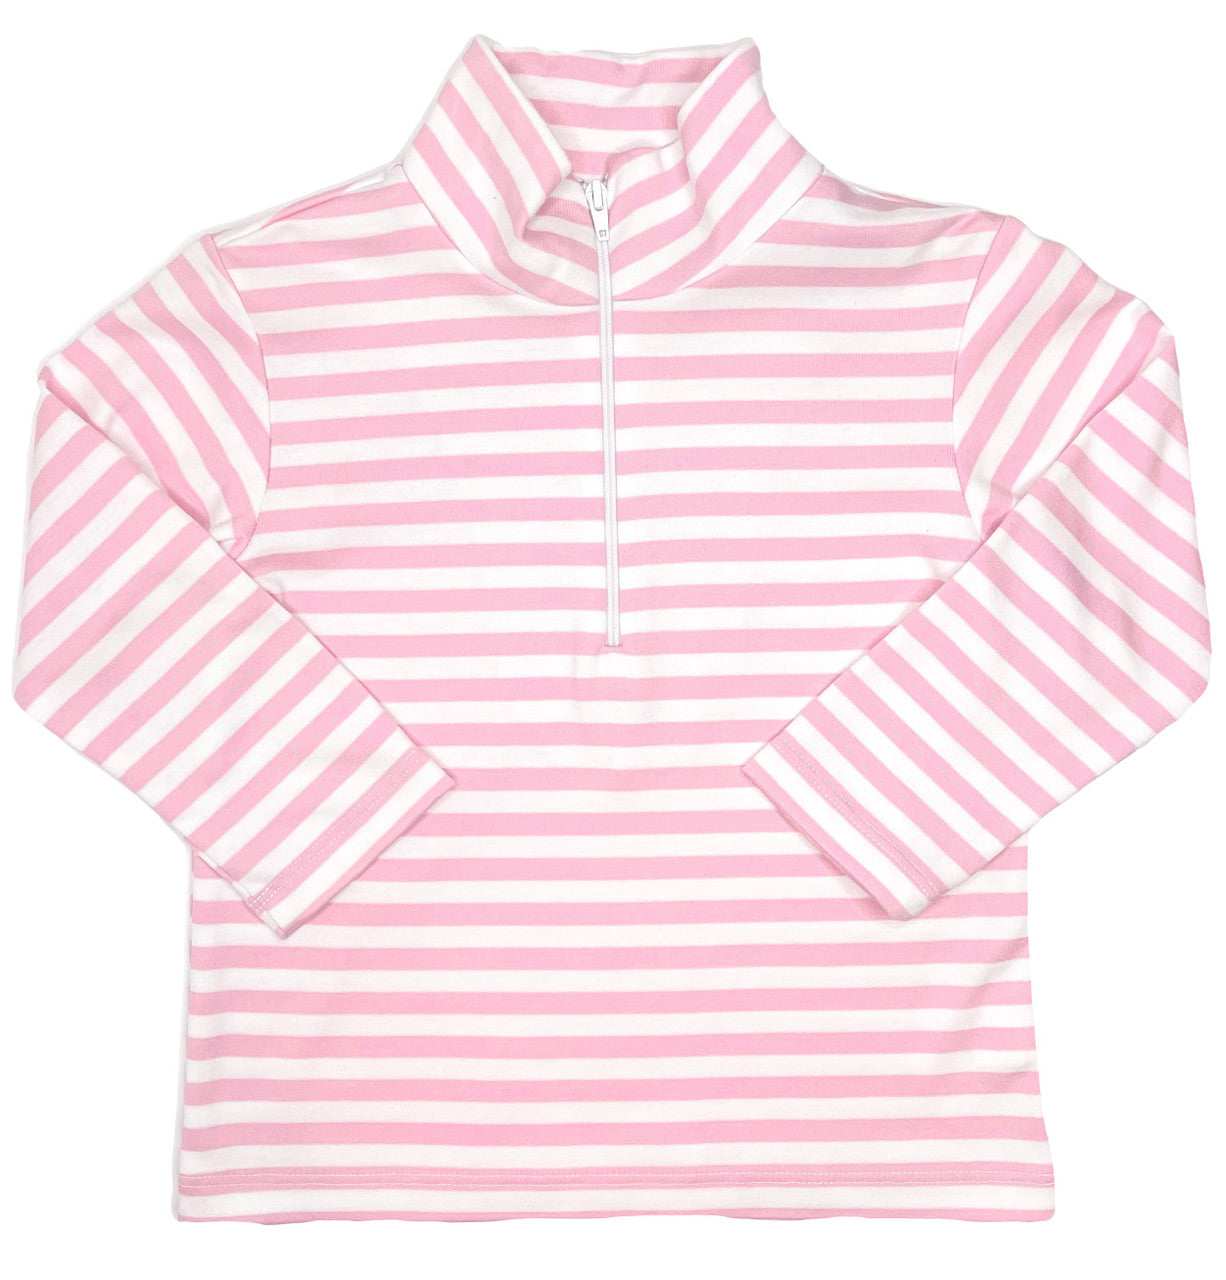 Cooper quarter zip pink stripe